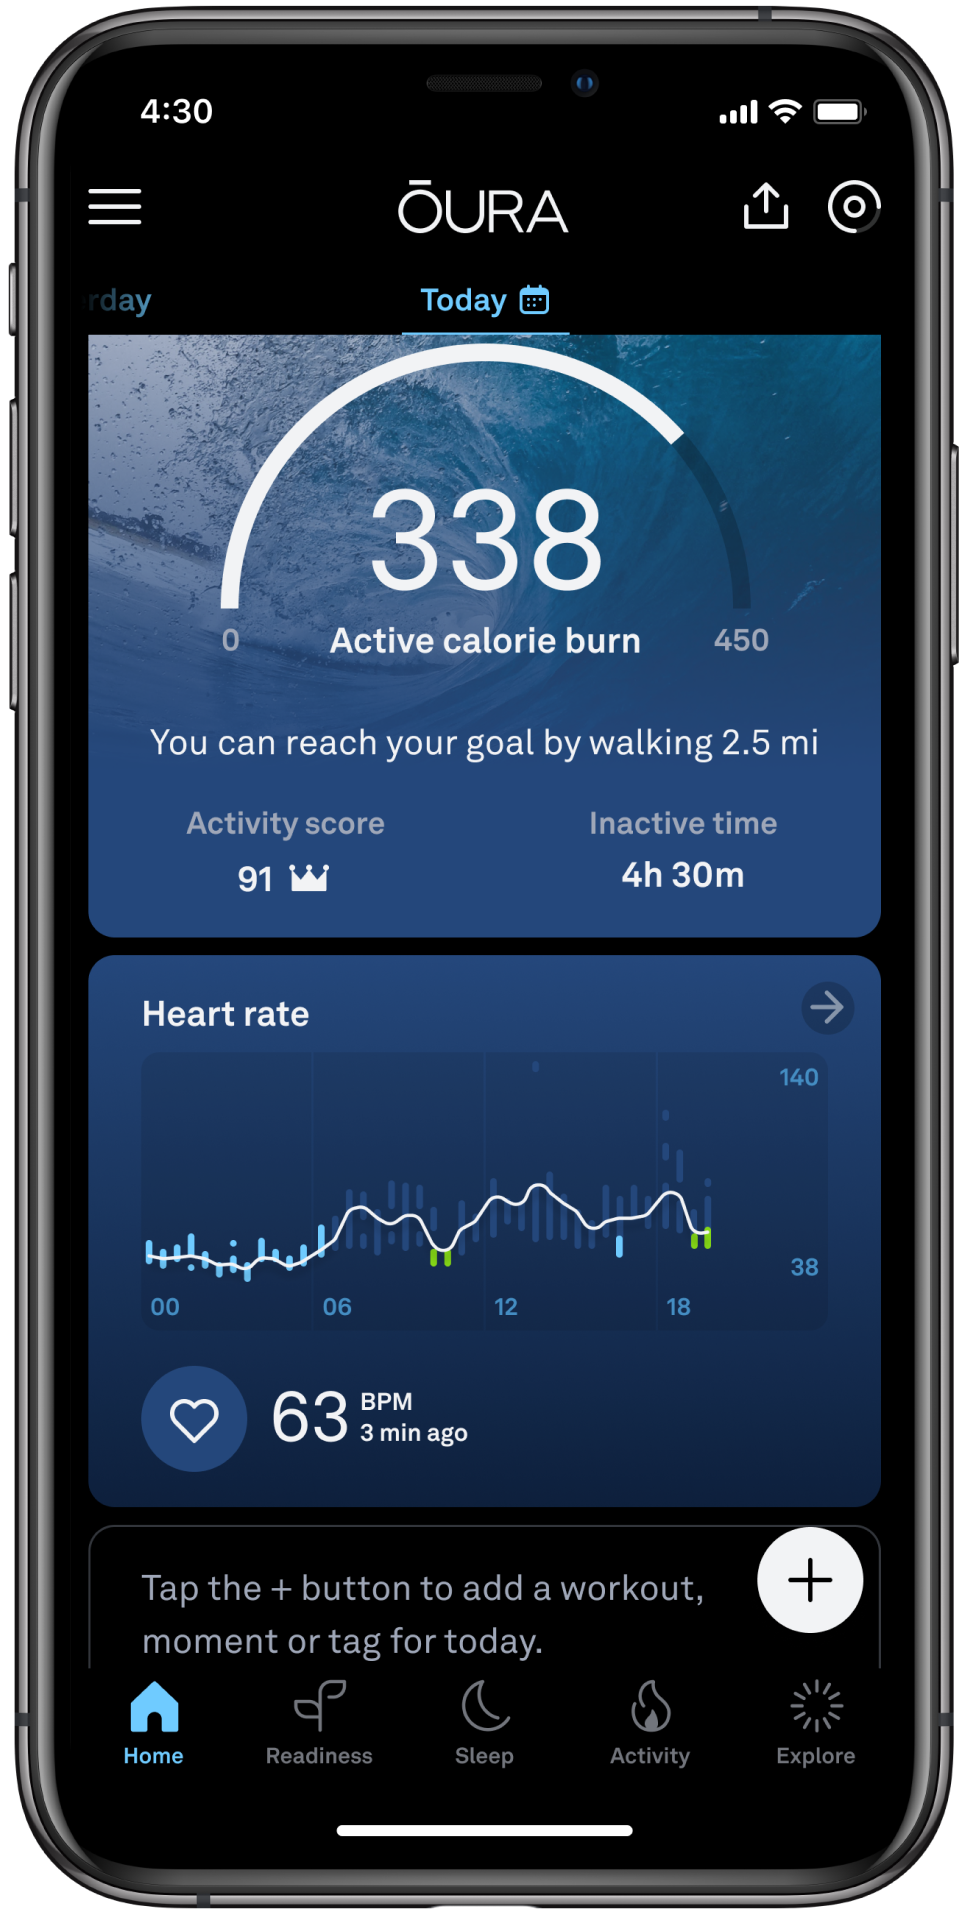 la pantalla de inicio de la aplicación Oura, que muestra el gráfico de frecuencia cardiaca de 24 horas. El gráfico incluye barras por colores: el azul indica la frecuencia cardíaca nocturna y el verde momentos de tiempo reparador